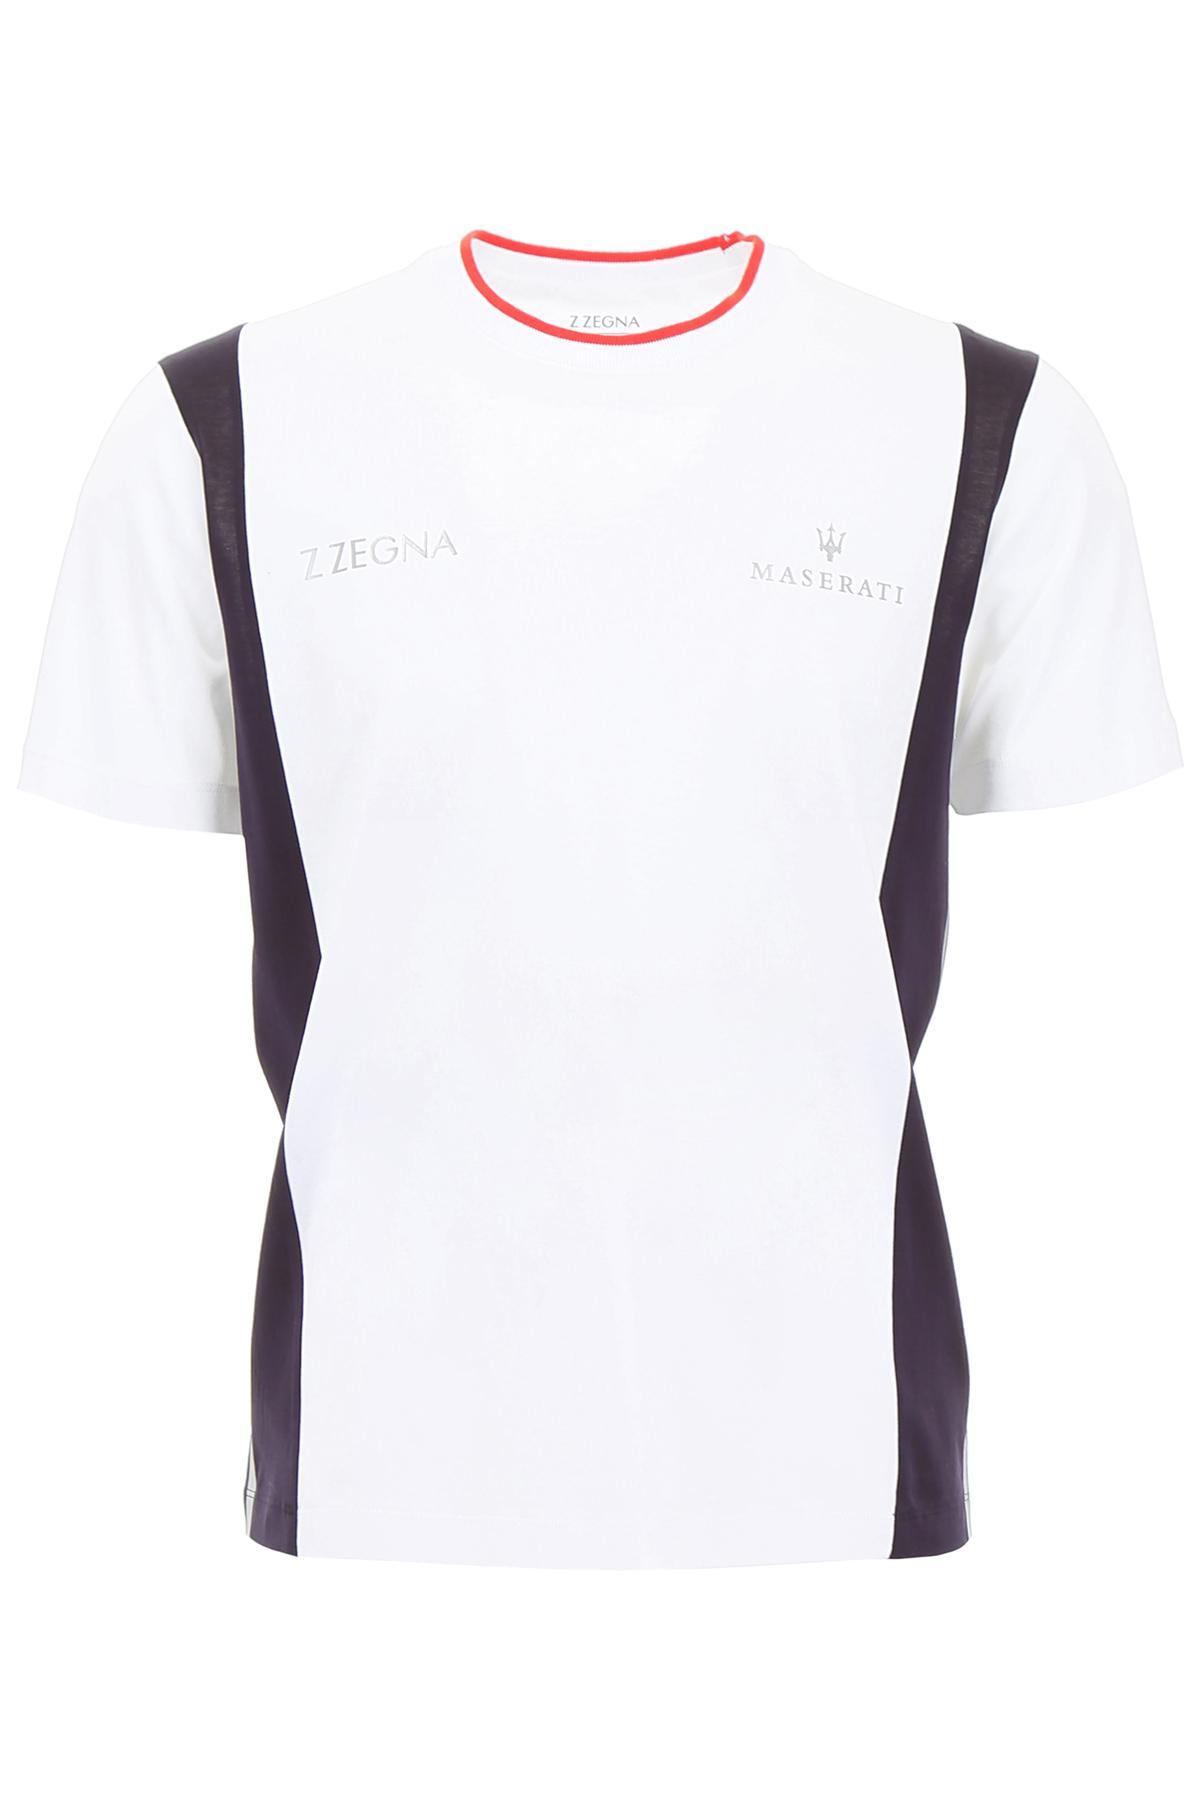 Zegna Maserati T-shirt in White for Men | Lyst Australia